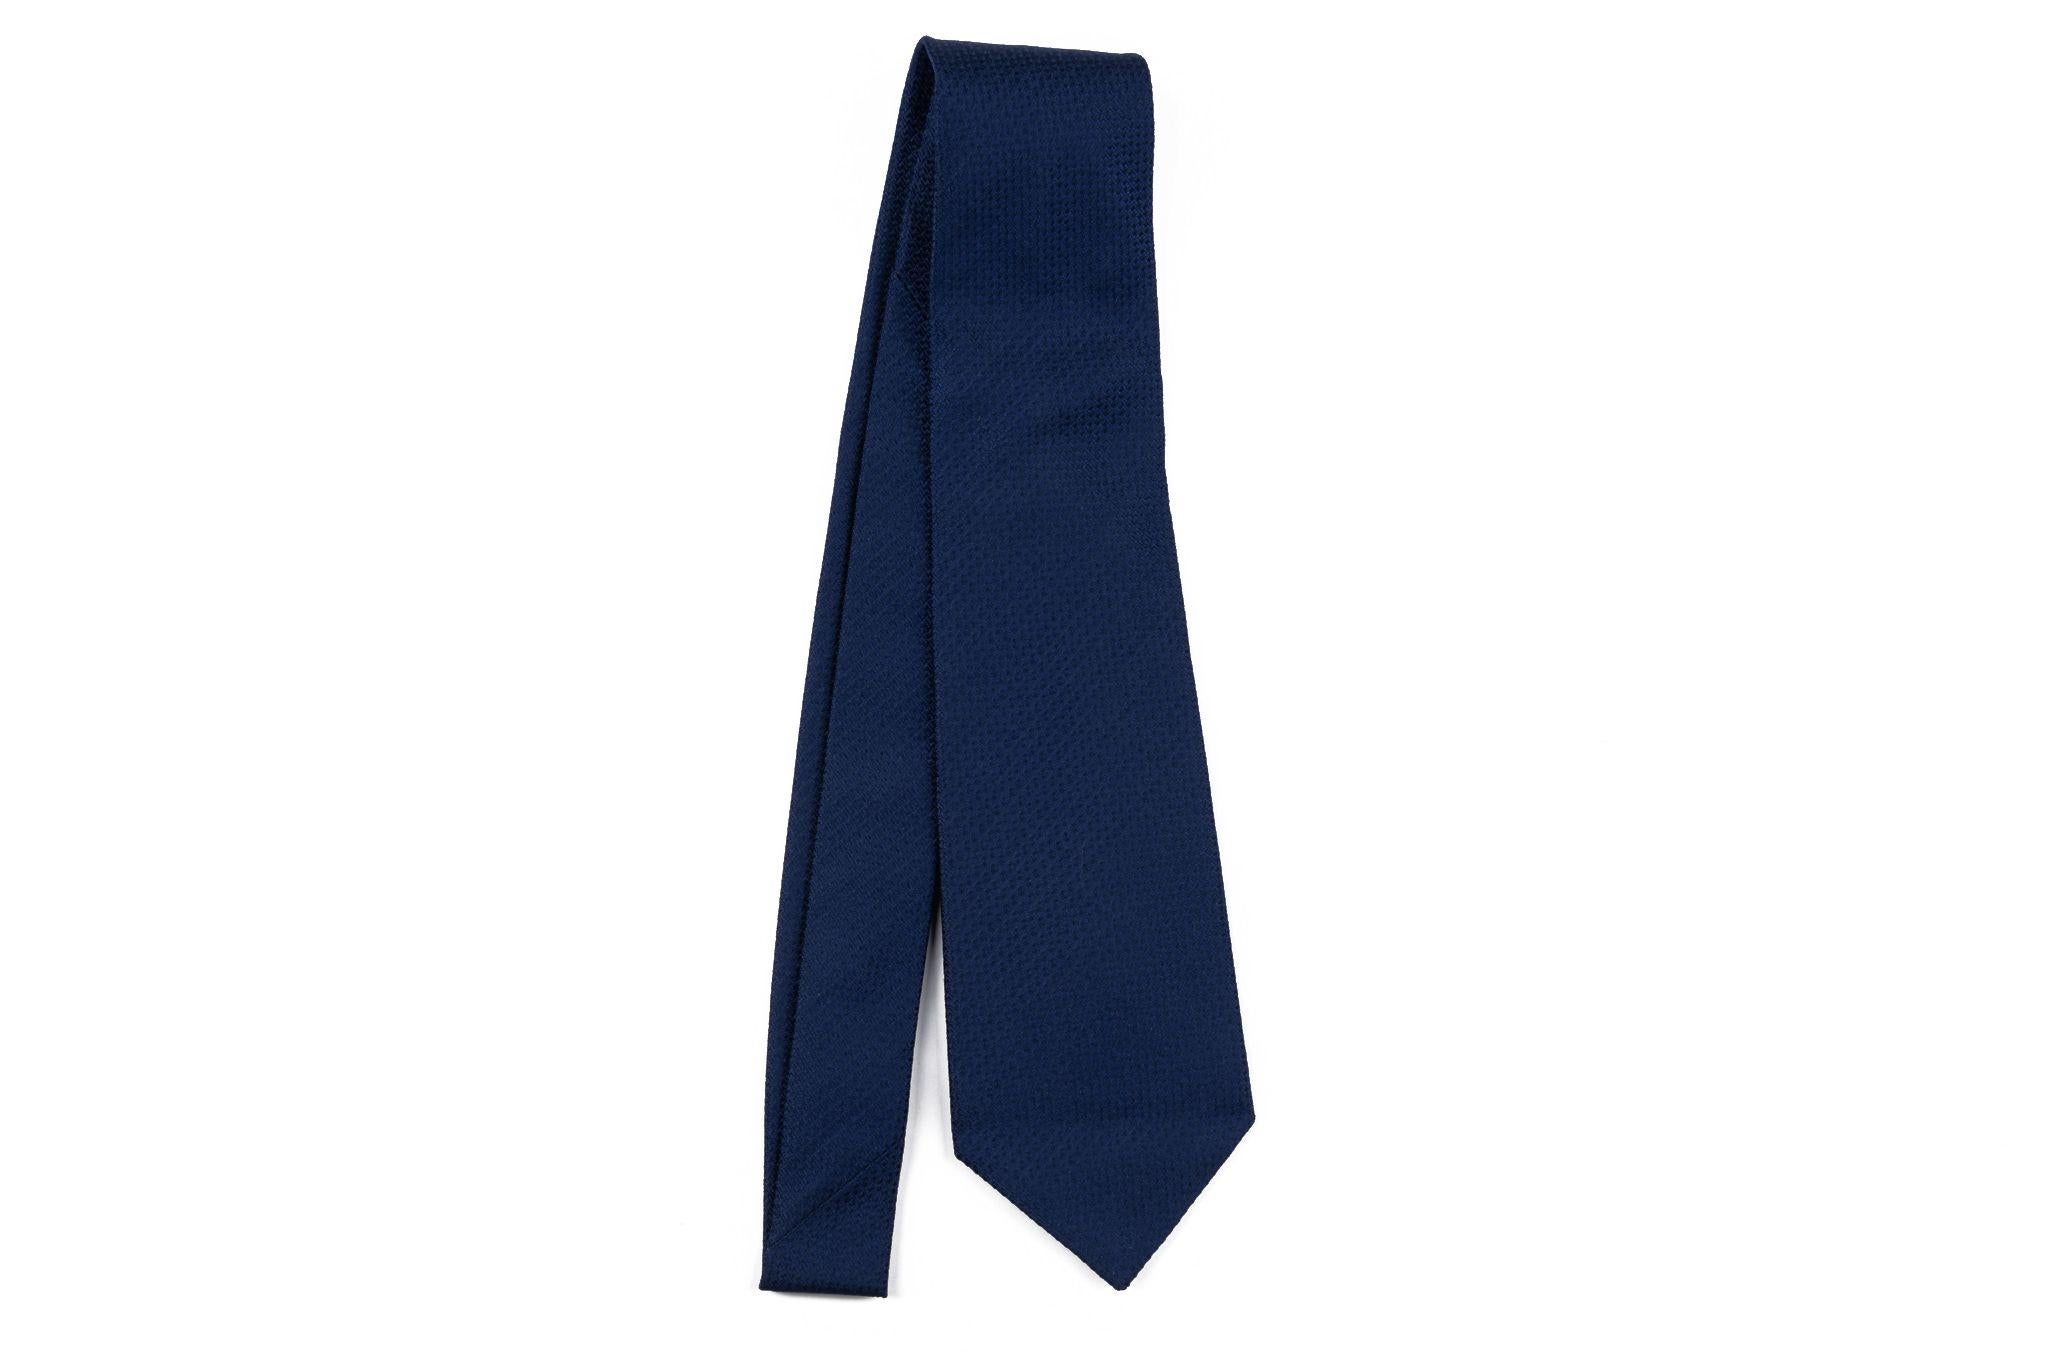 Cravate neuve Chanel bleu marine 100% soie. 
Label de composition, étiquette de marque et chaîne de signature. Livré avec l'enveloppe d'origine.